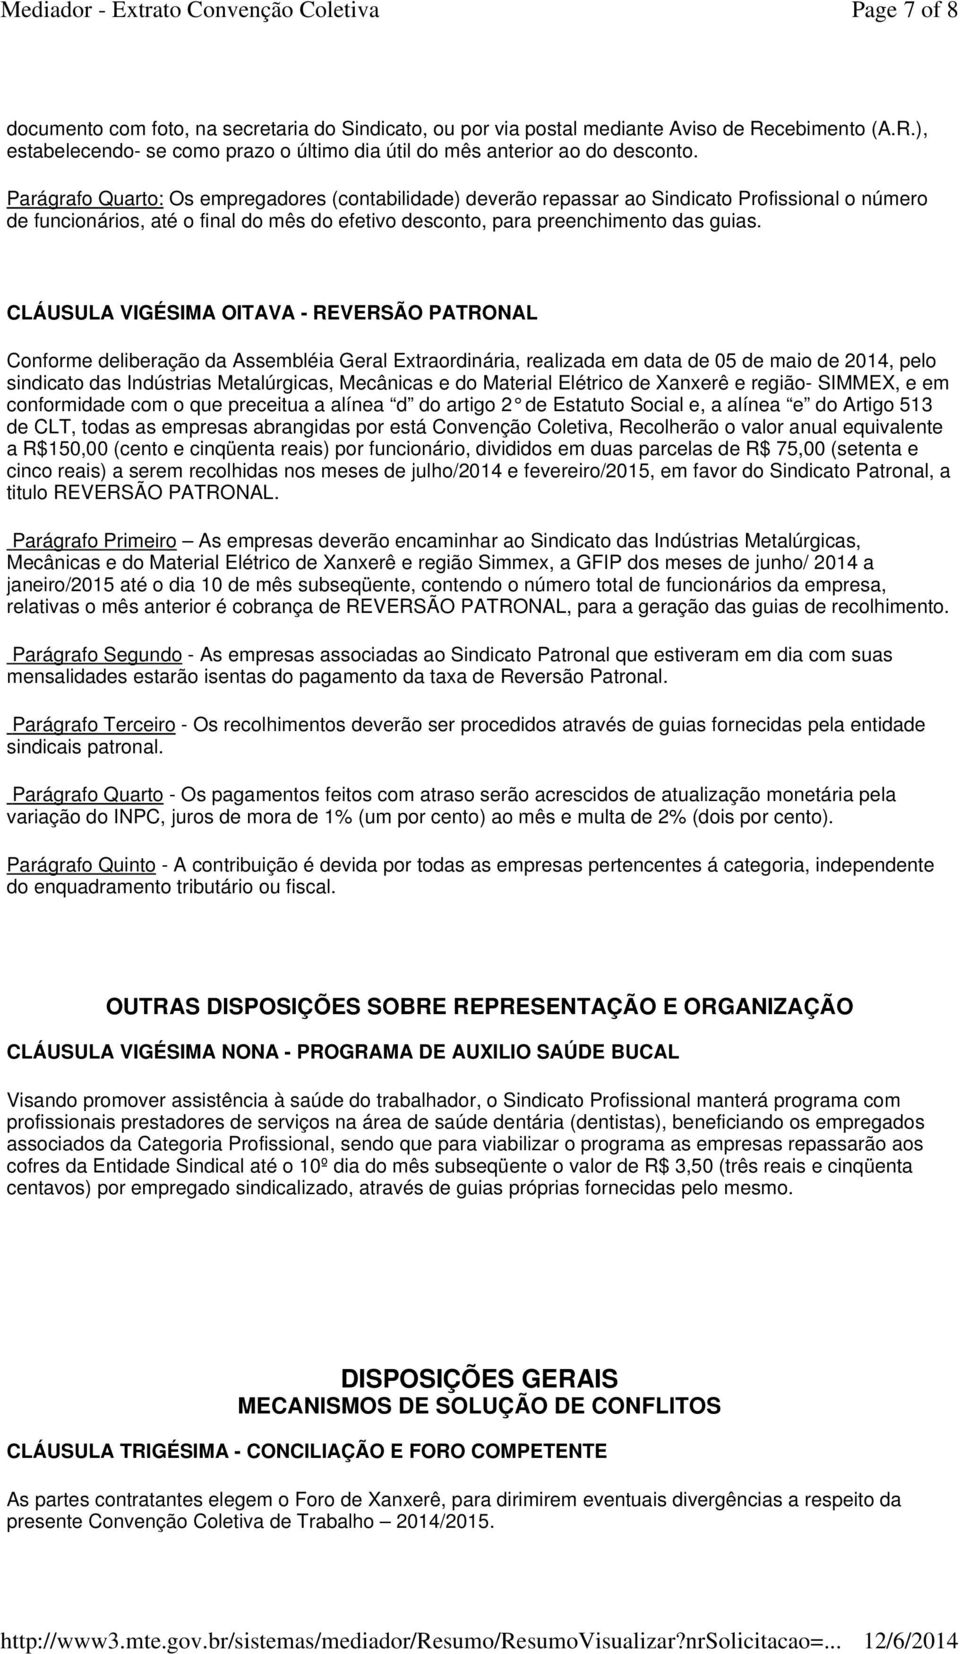 CLÁUSULA VIGÉSIMA OITAVA - REVERSÃO PATRONAL Conforme deliberação da Assembléia Geral Extraordinária, realizada em data de 05 de maio de 2014, pelo sindicato das Indústrias Metalúrgicas, Mecânicas e